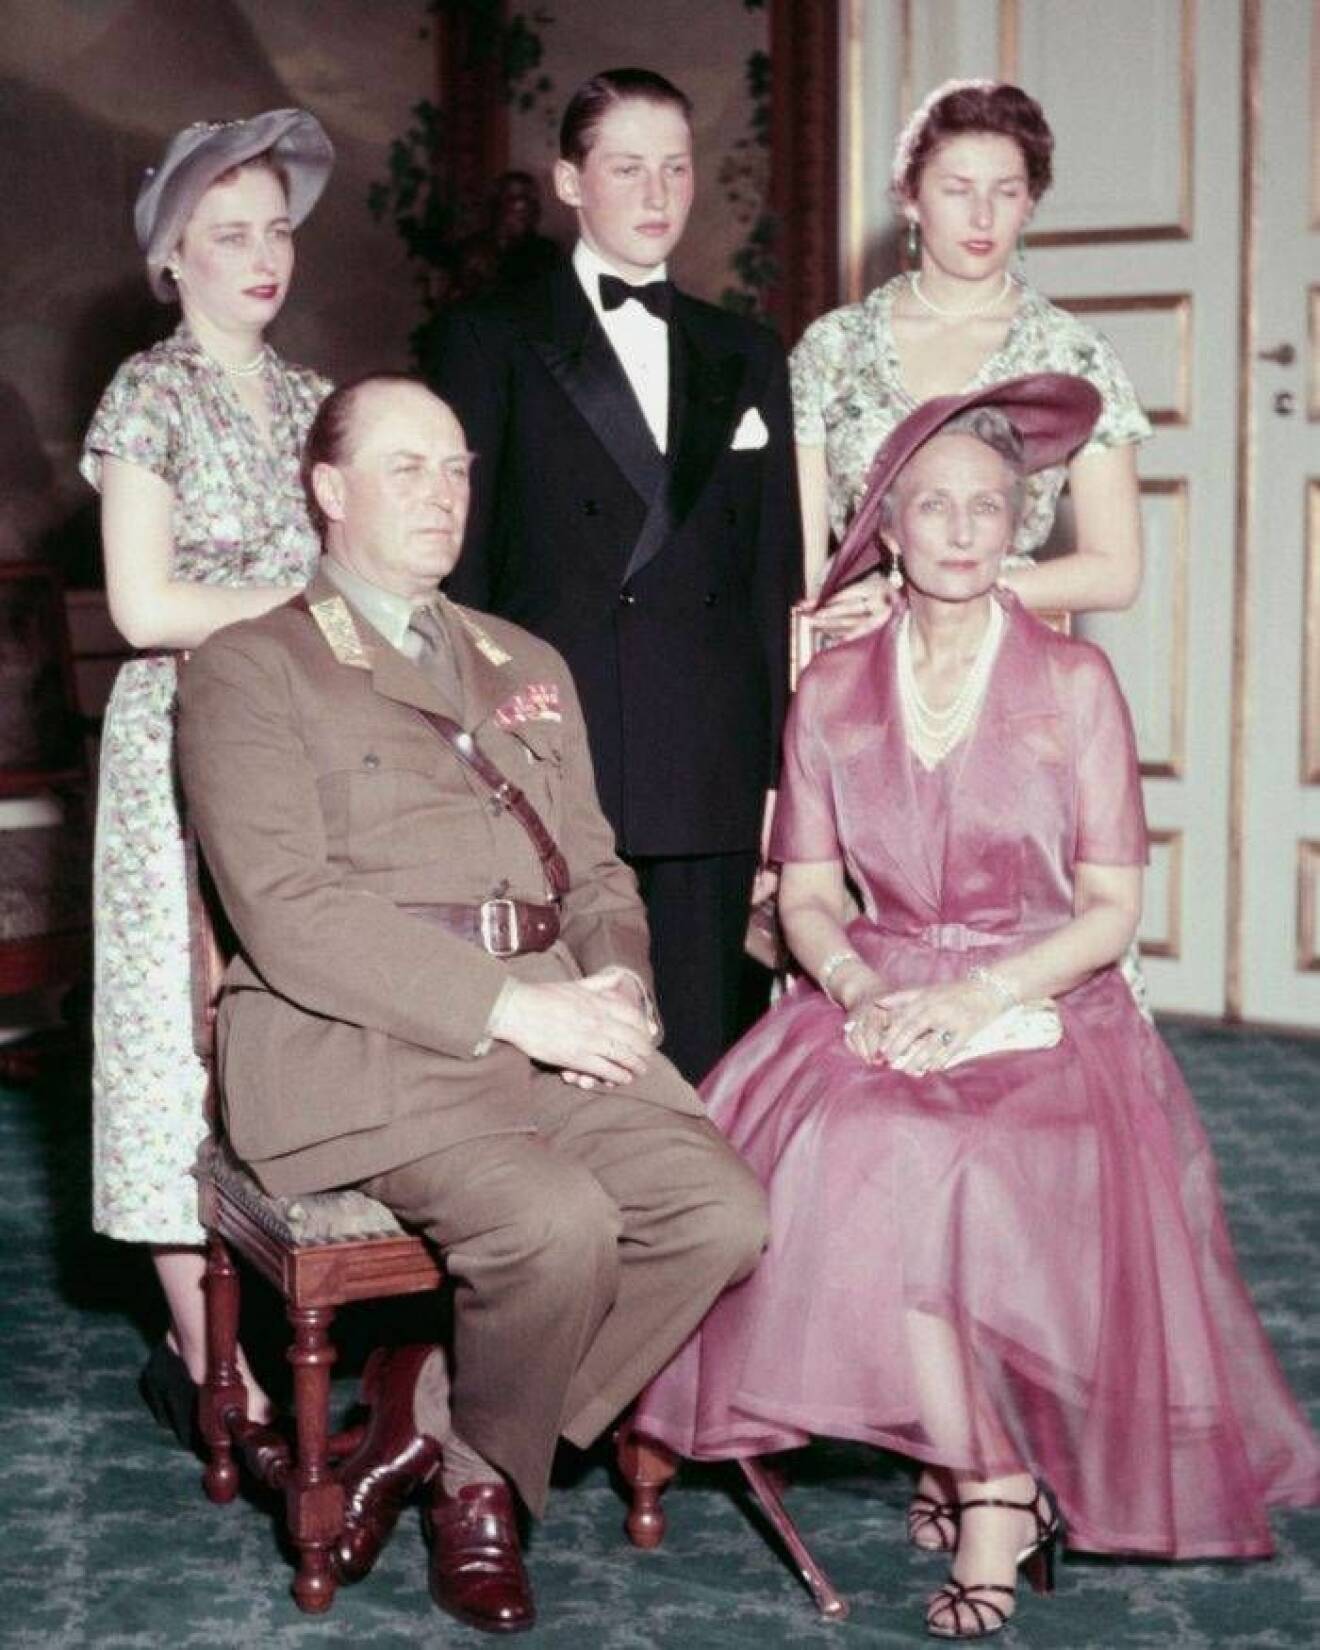 Olav med sin familj: svenskfödda Märtha och barnen Harald, Ragnhild och Astrid.